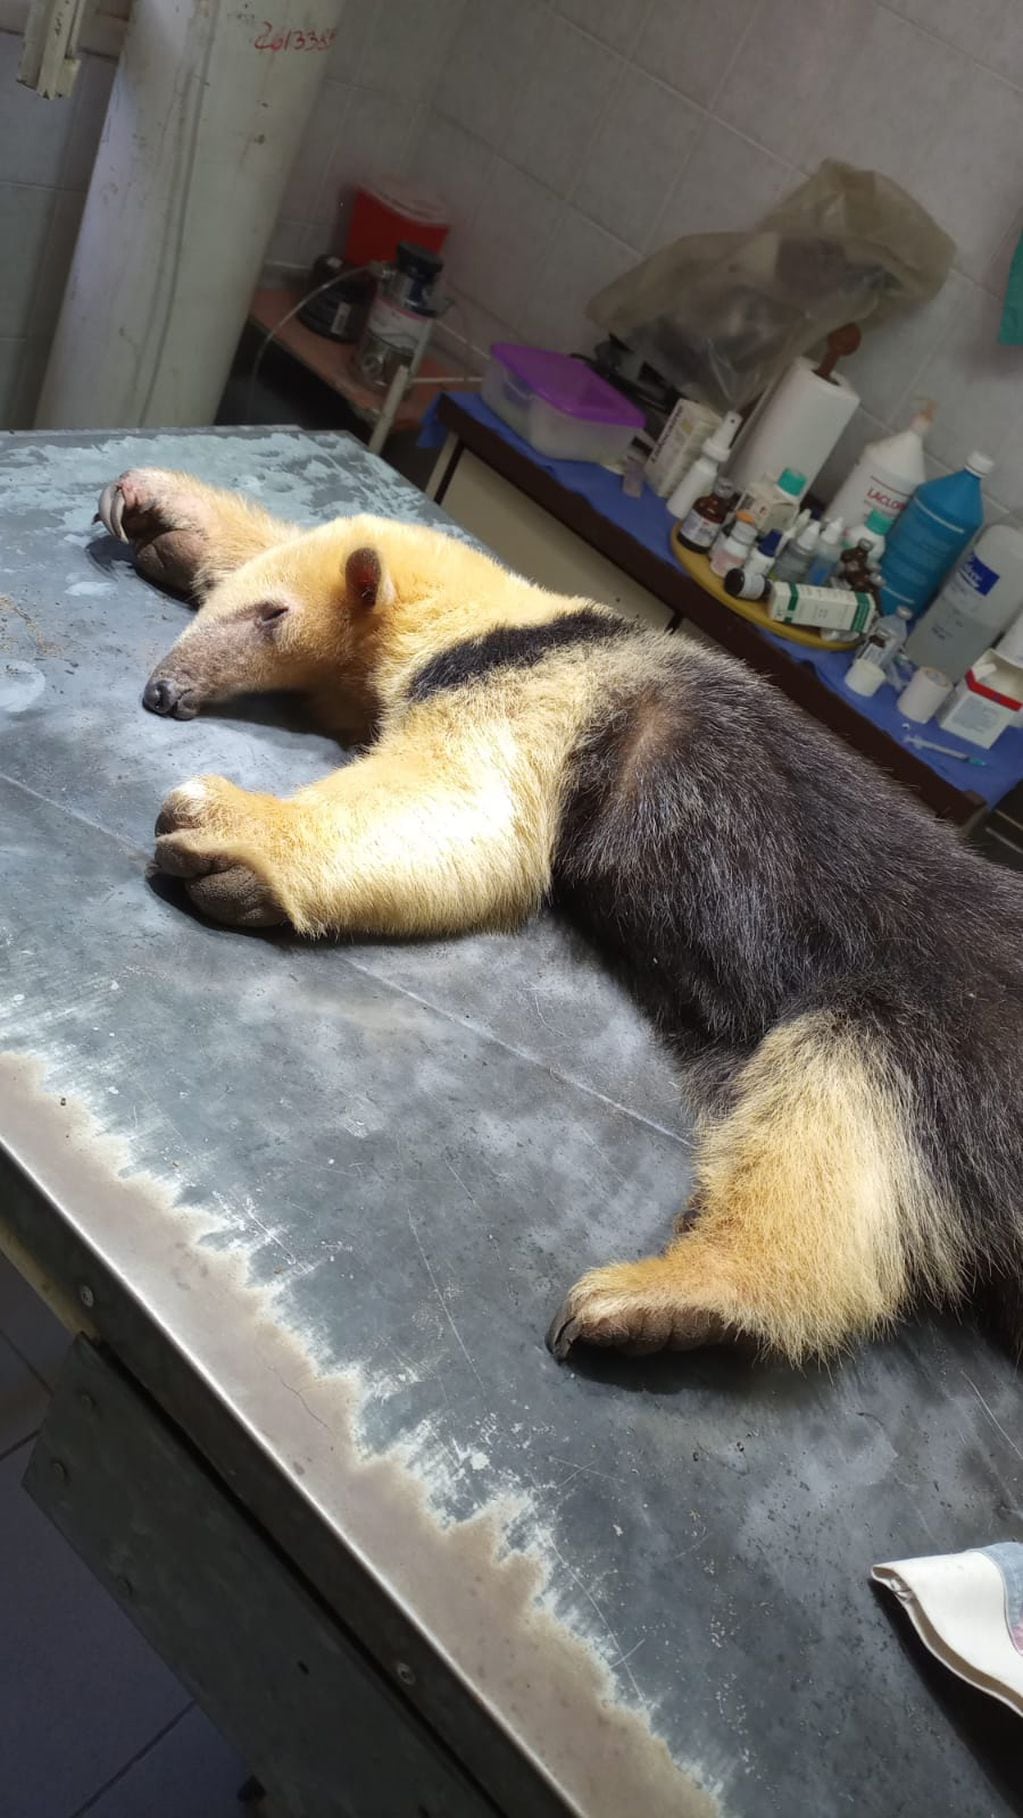 Fotos y video: un oso hormiguero traído de forma ilegal a Mendoza sorprendió a unos puesteros en Santa Rosa. Foto: Gentileza Fundación Cullunche.